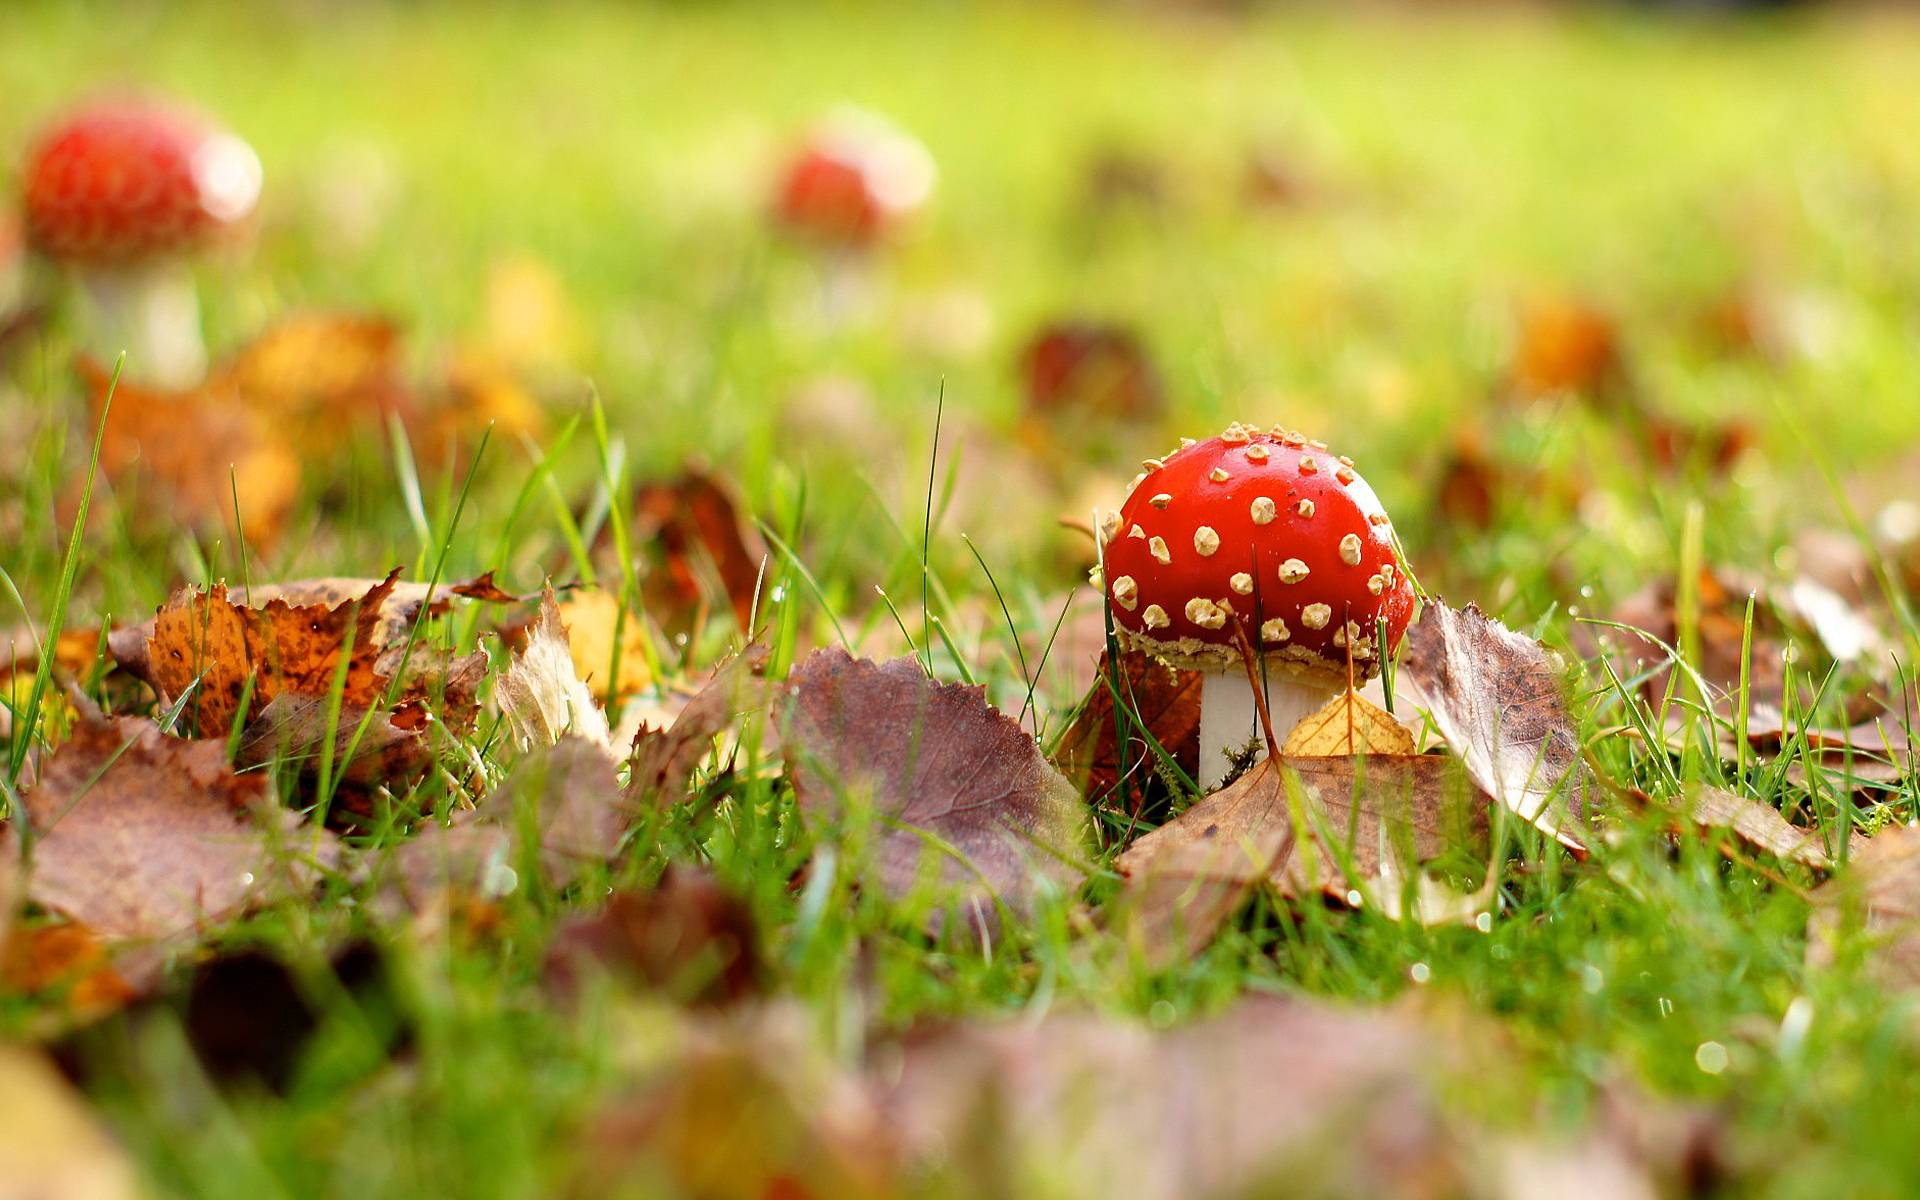 mushroom images